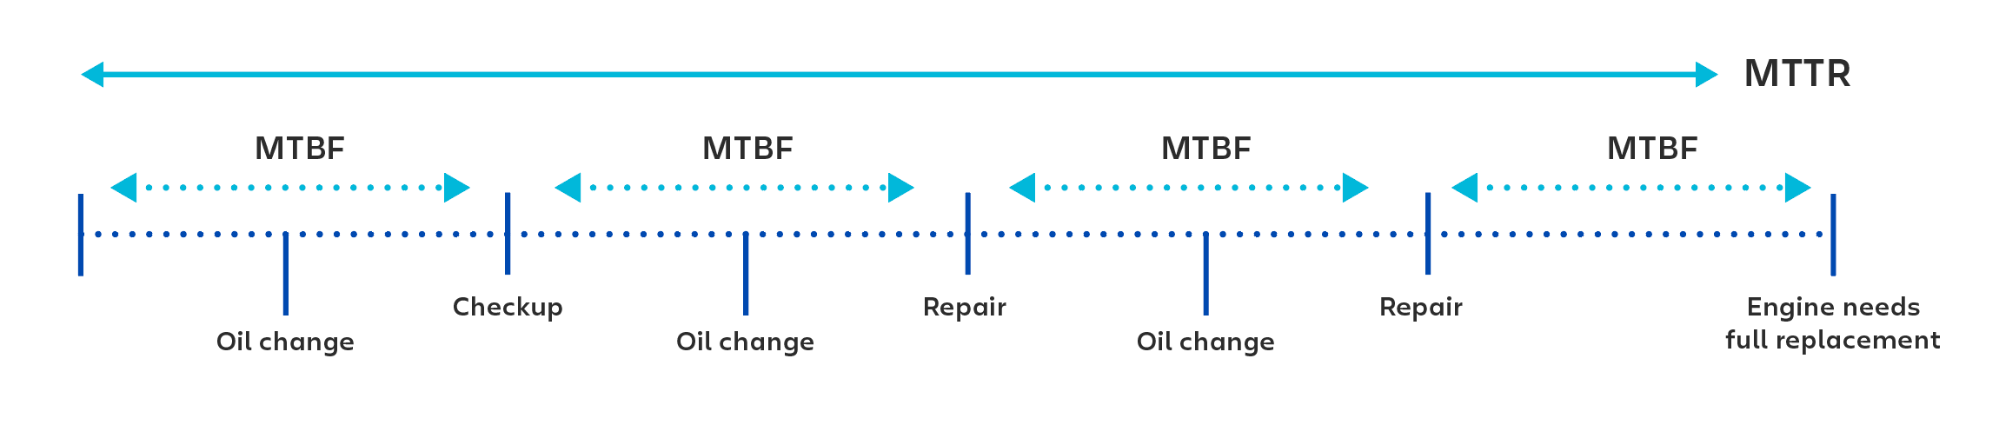 Visuelles Beispiel für die Verwendung von MTBF (mittlere Betriebsdauer zwischen Ausfällen) für die Berechnung des Zeitraums zwischen jeder Überprüfung oder Reparatur.